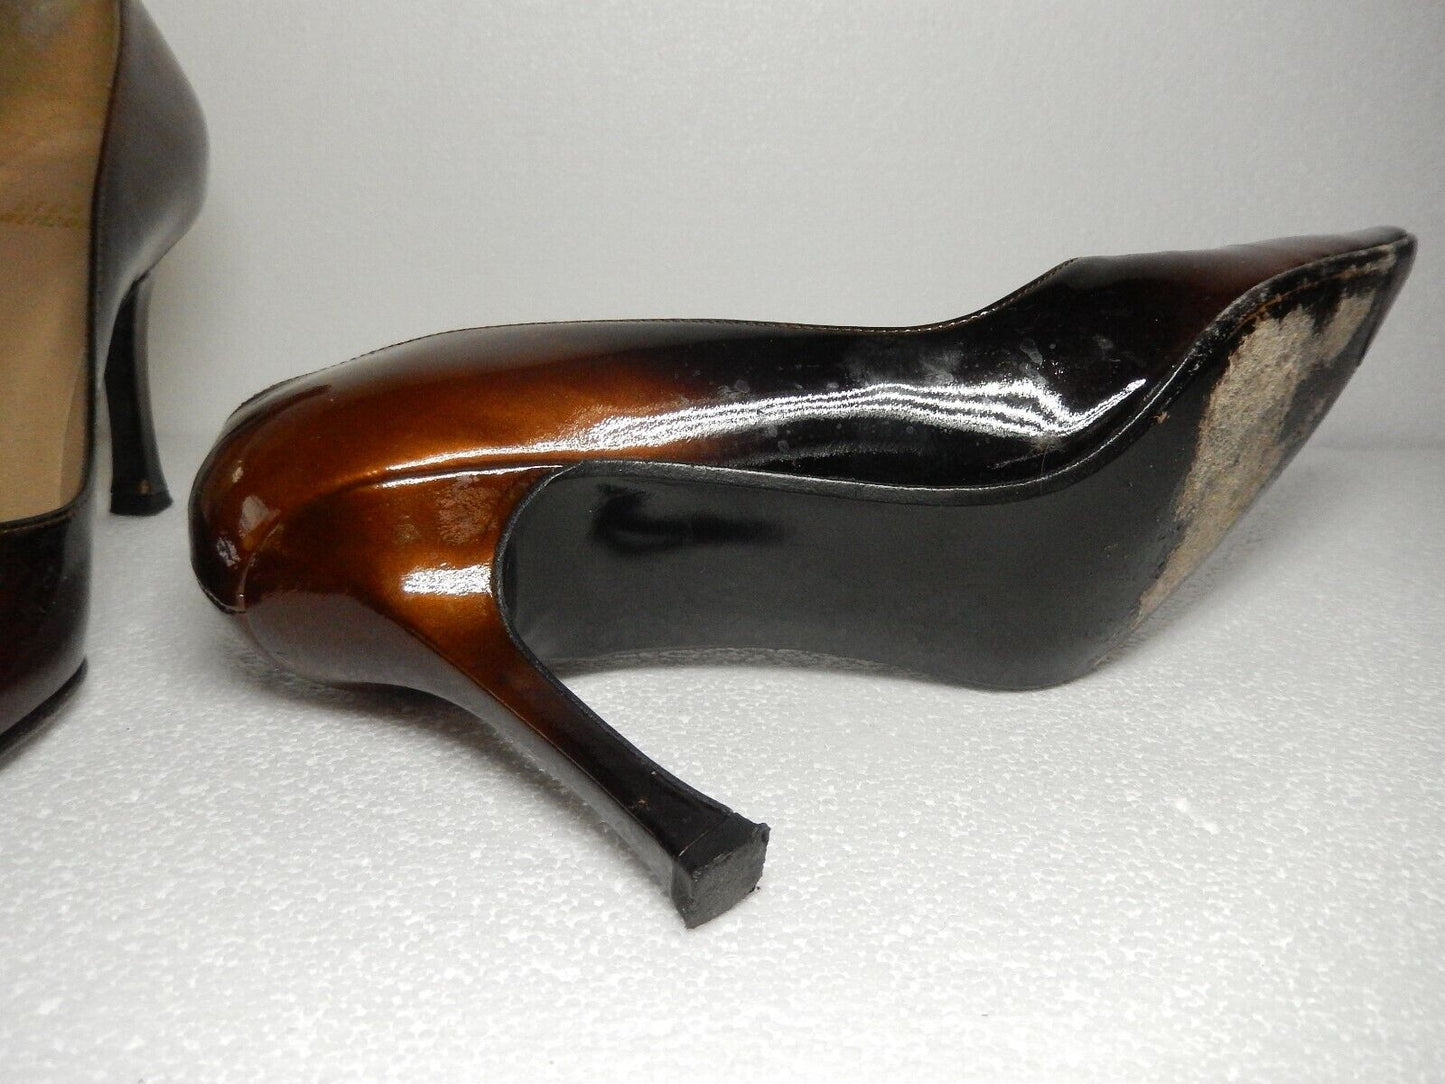 Stuart Weitzman Sz 7.5 S Bronze Patent Leather Pointed Toe Stiletto Pumps Shoes